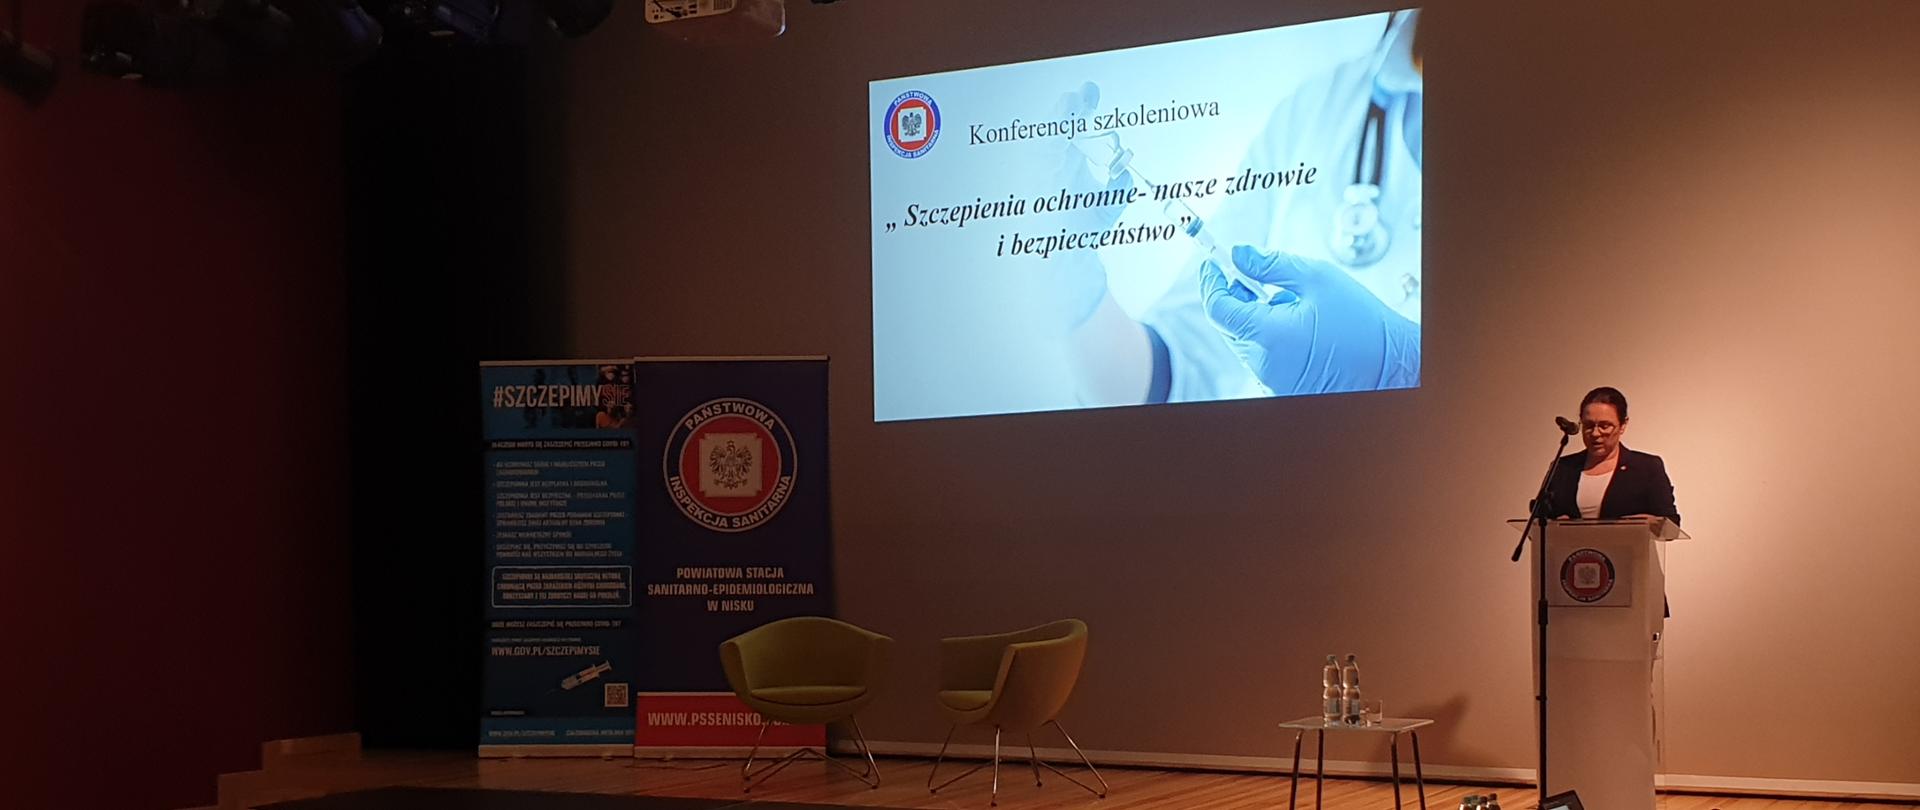 zdjęcie przedstawia PPIS w Nisku przemawiającą na otwarciu konferencji szkoleniowej "Szczepienia ochronne - nasze zdrowie i bezpieczeństwo"